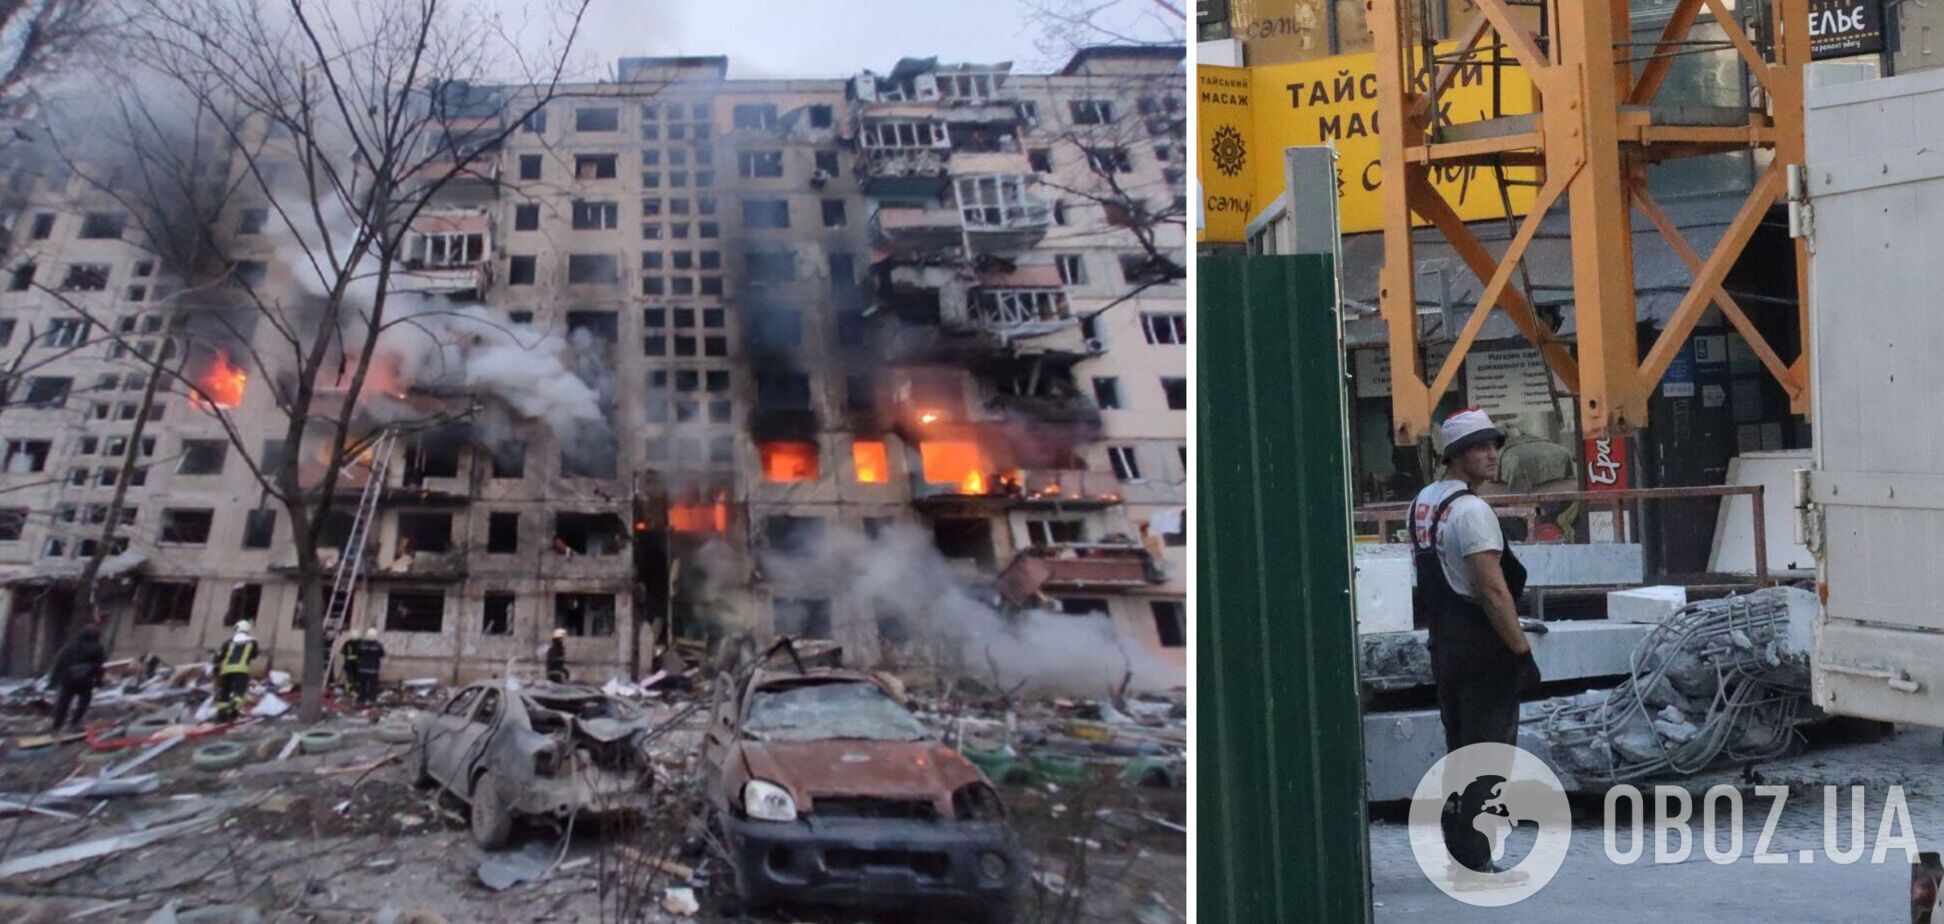 Розбирають та перебудовують заново: як сьогодні в Києві виглядають зруйновані окупантами будинки. Фото до і після